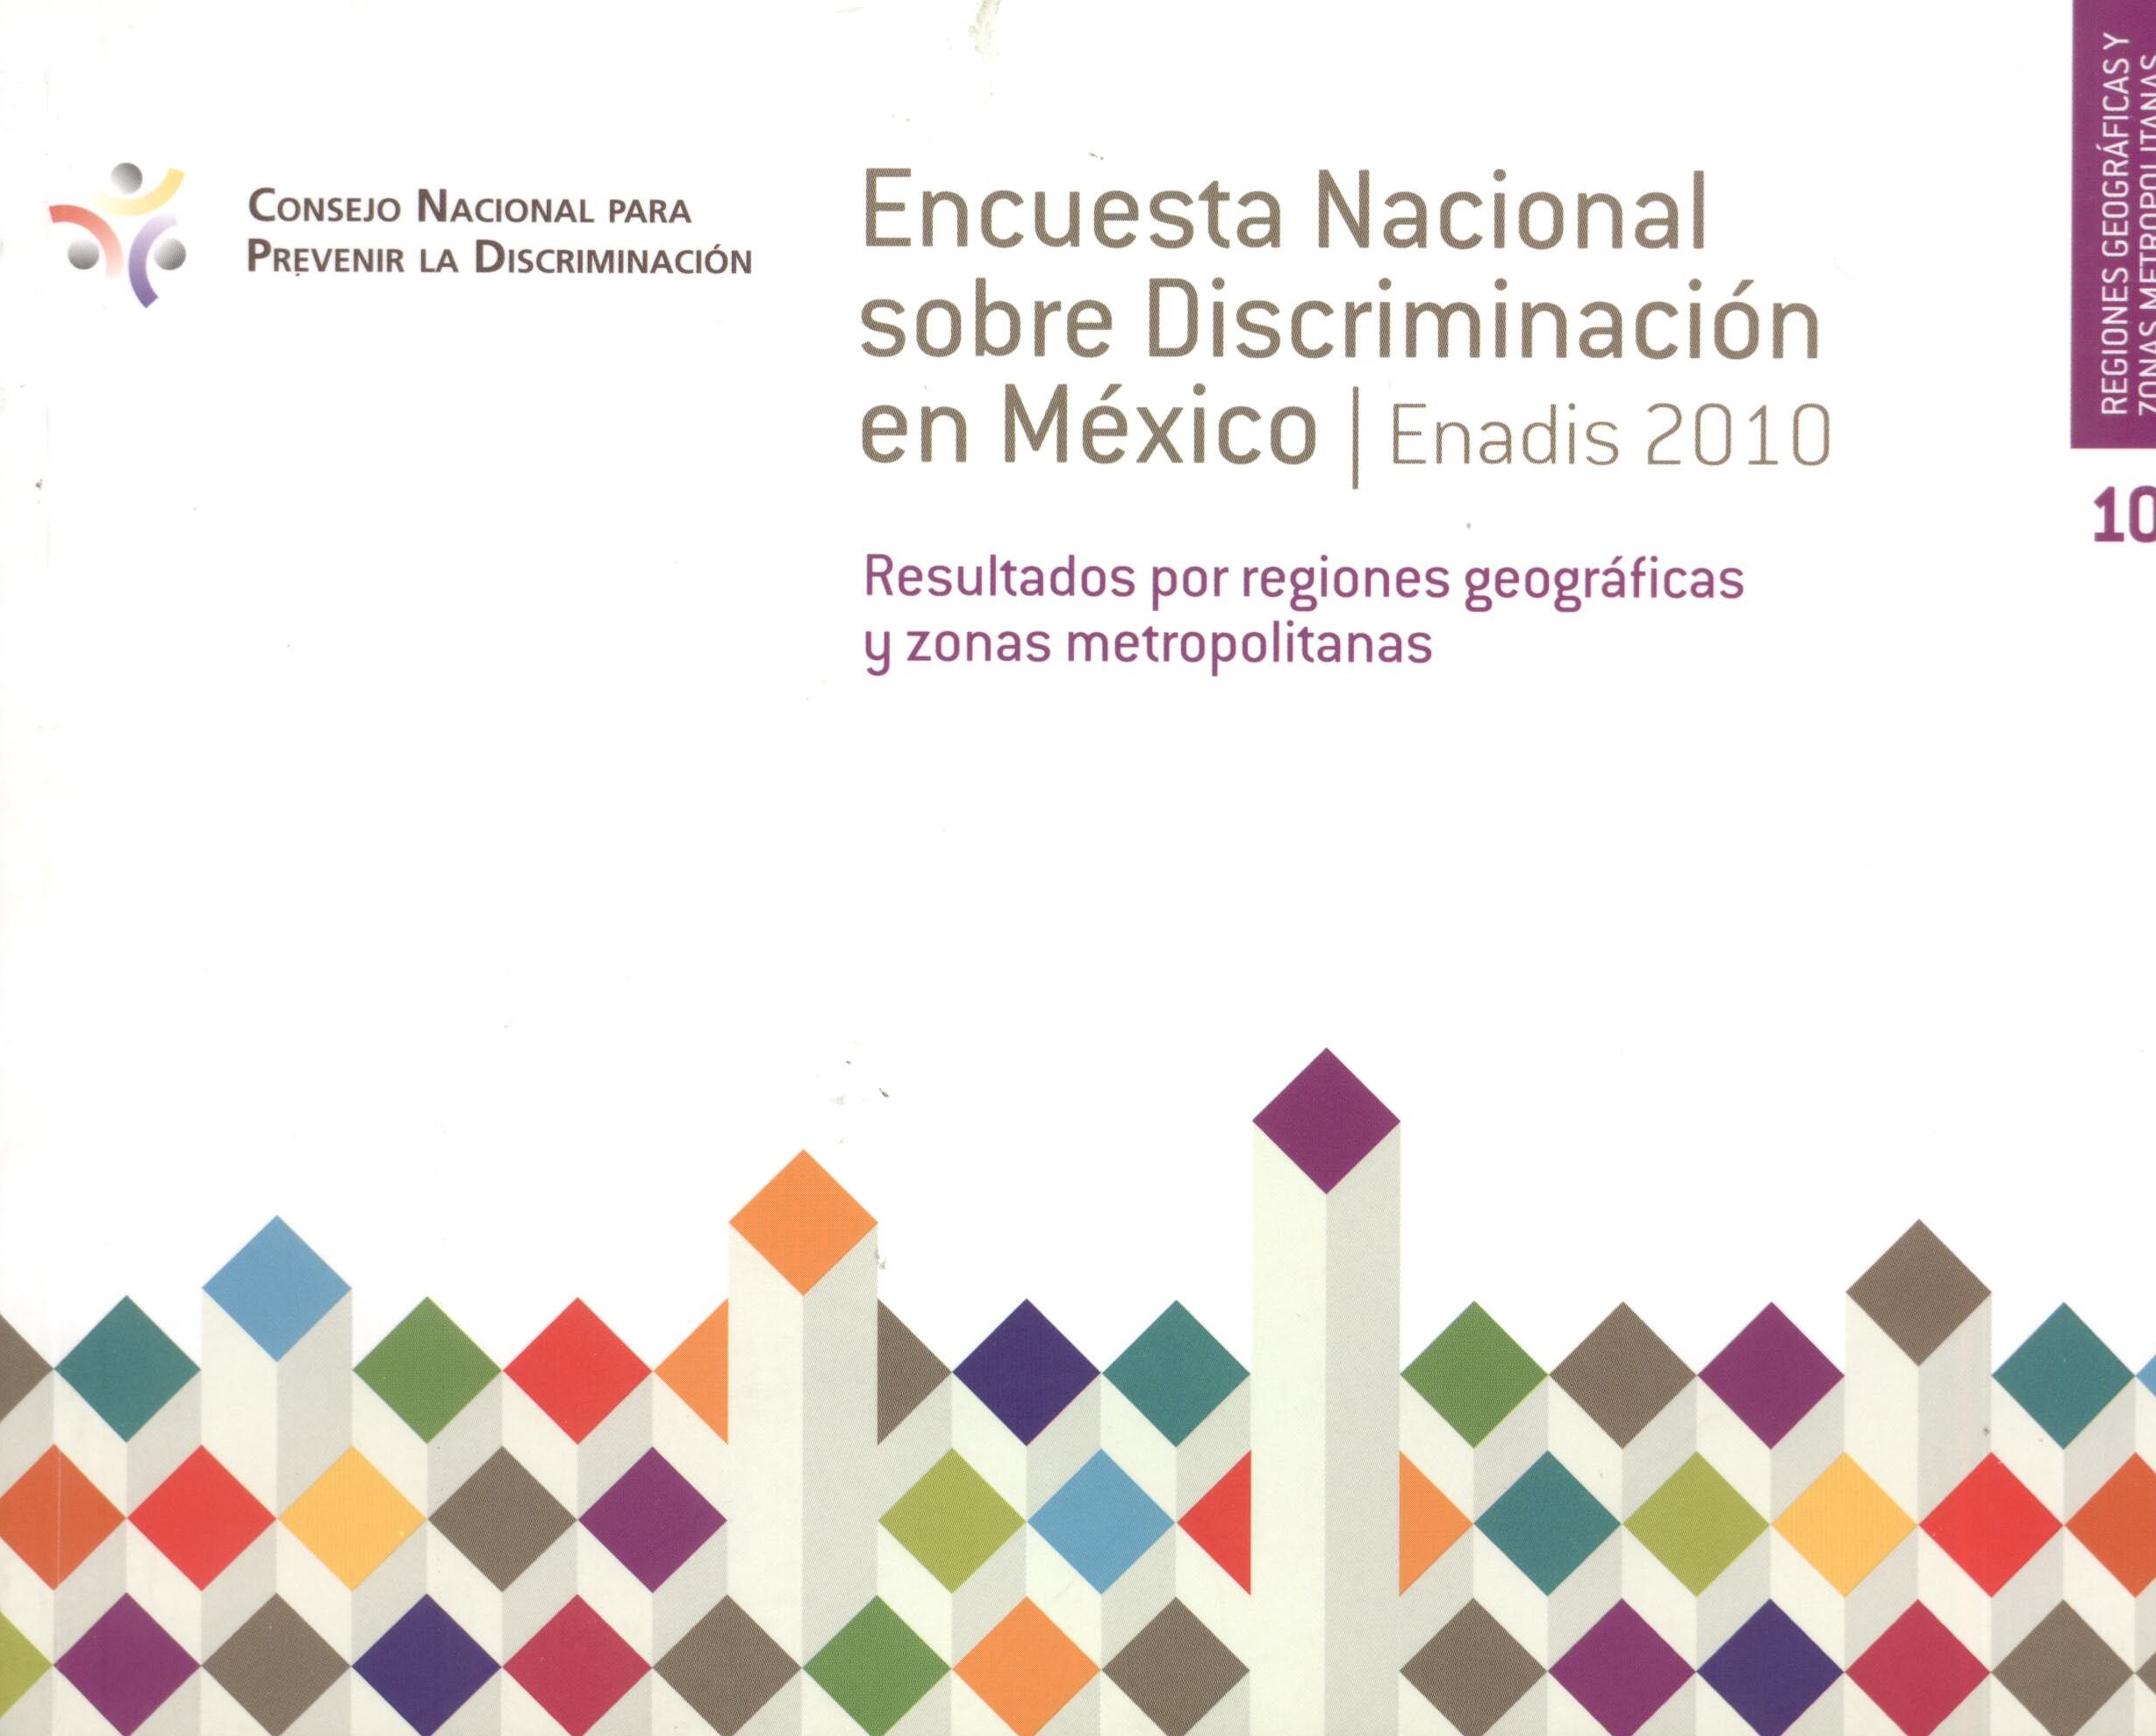 Encuesta nacional sobre discriminación en México. Resultados por regiones geográficas y zonas metropolitanas